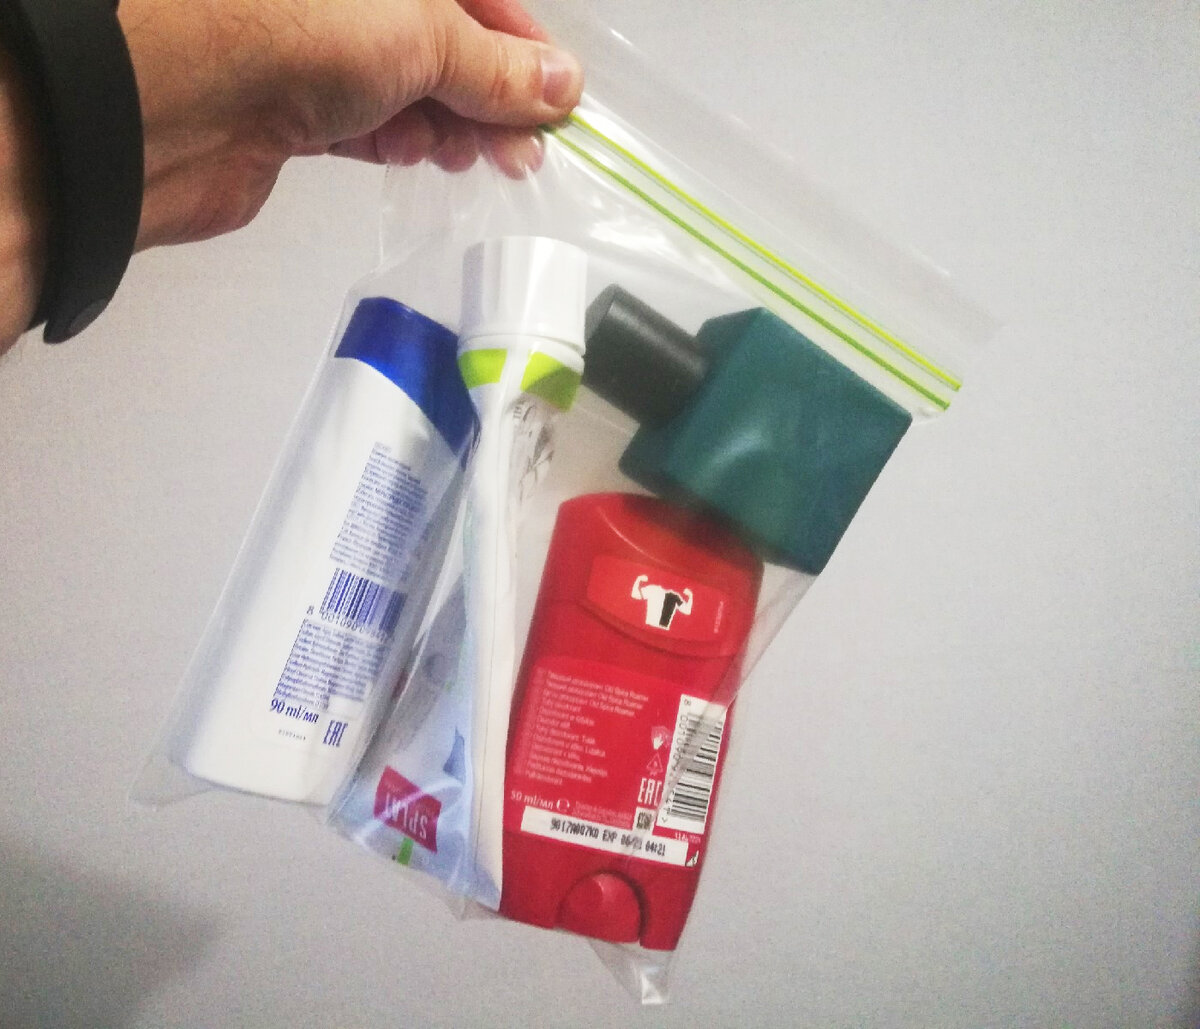 Что можно брать в ручную s7. Пакет для жидкостей в ручной клади. Пластиковый пакет для перевозки жидкостей в самолете. ЗИП пакет для жидкостей в ручной клади. Прозрачные пакетики для ручной клади.